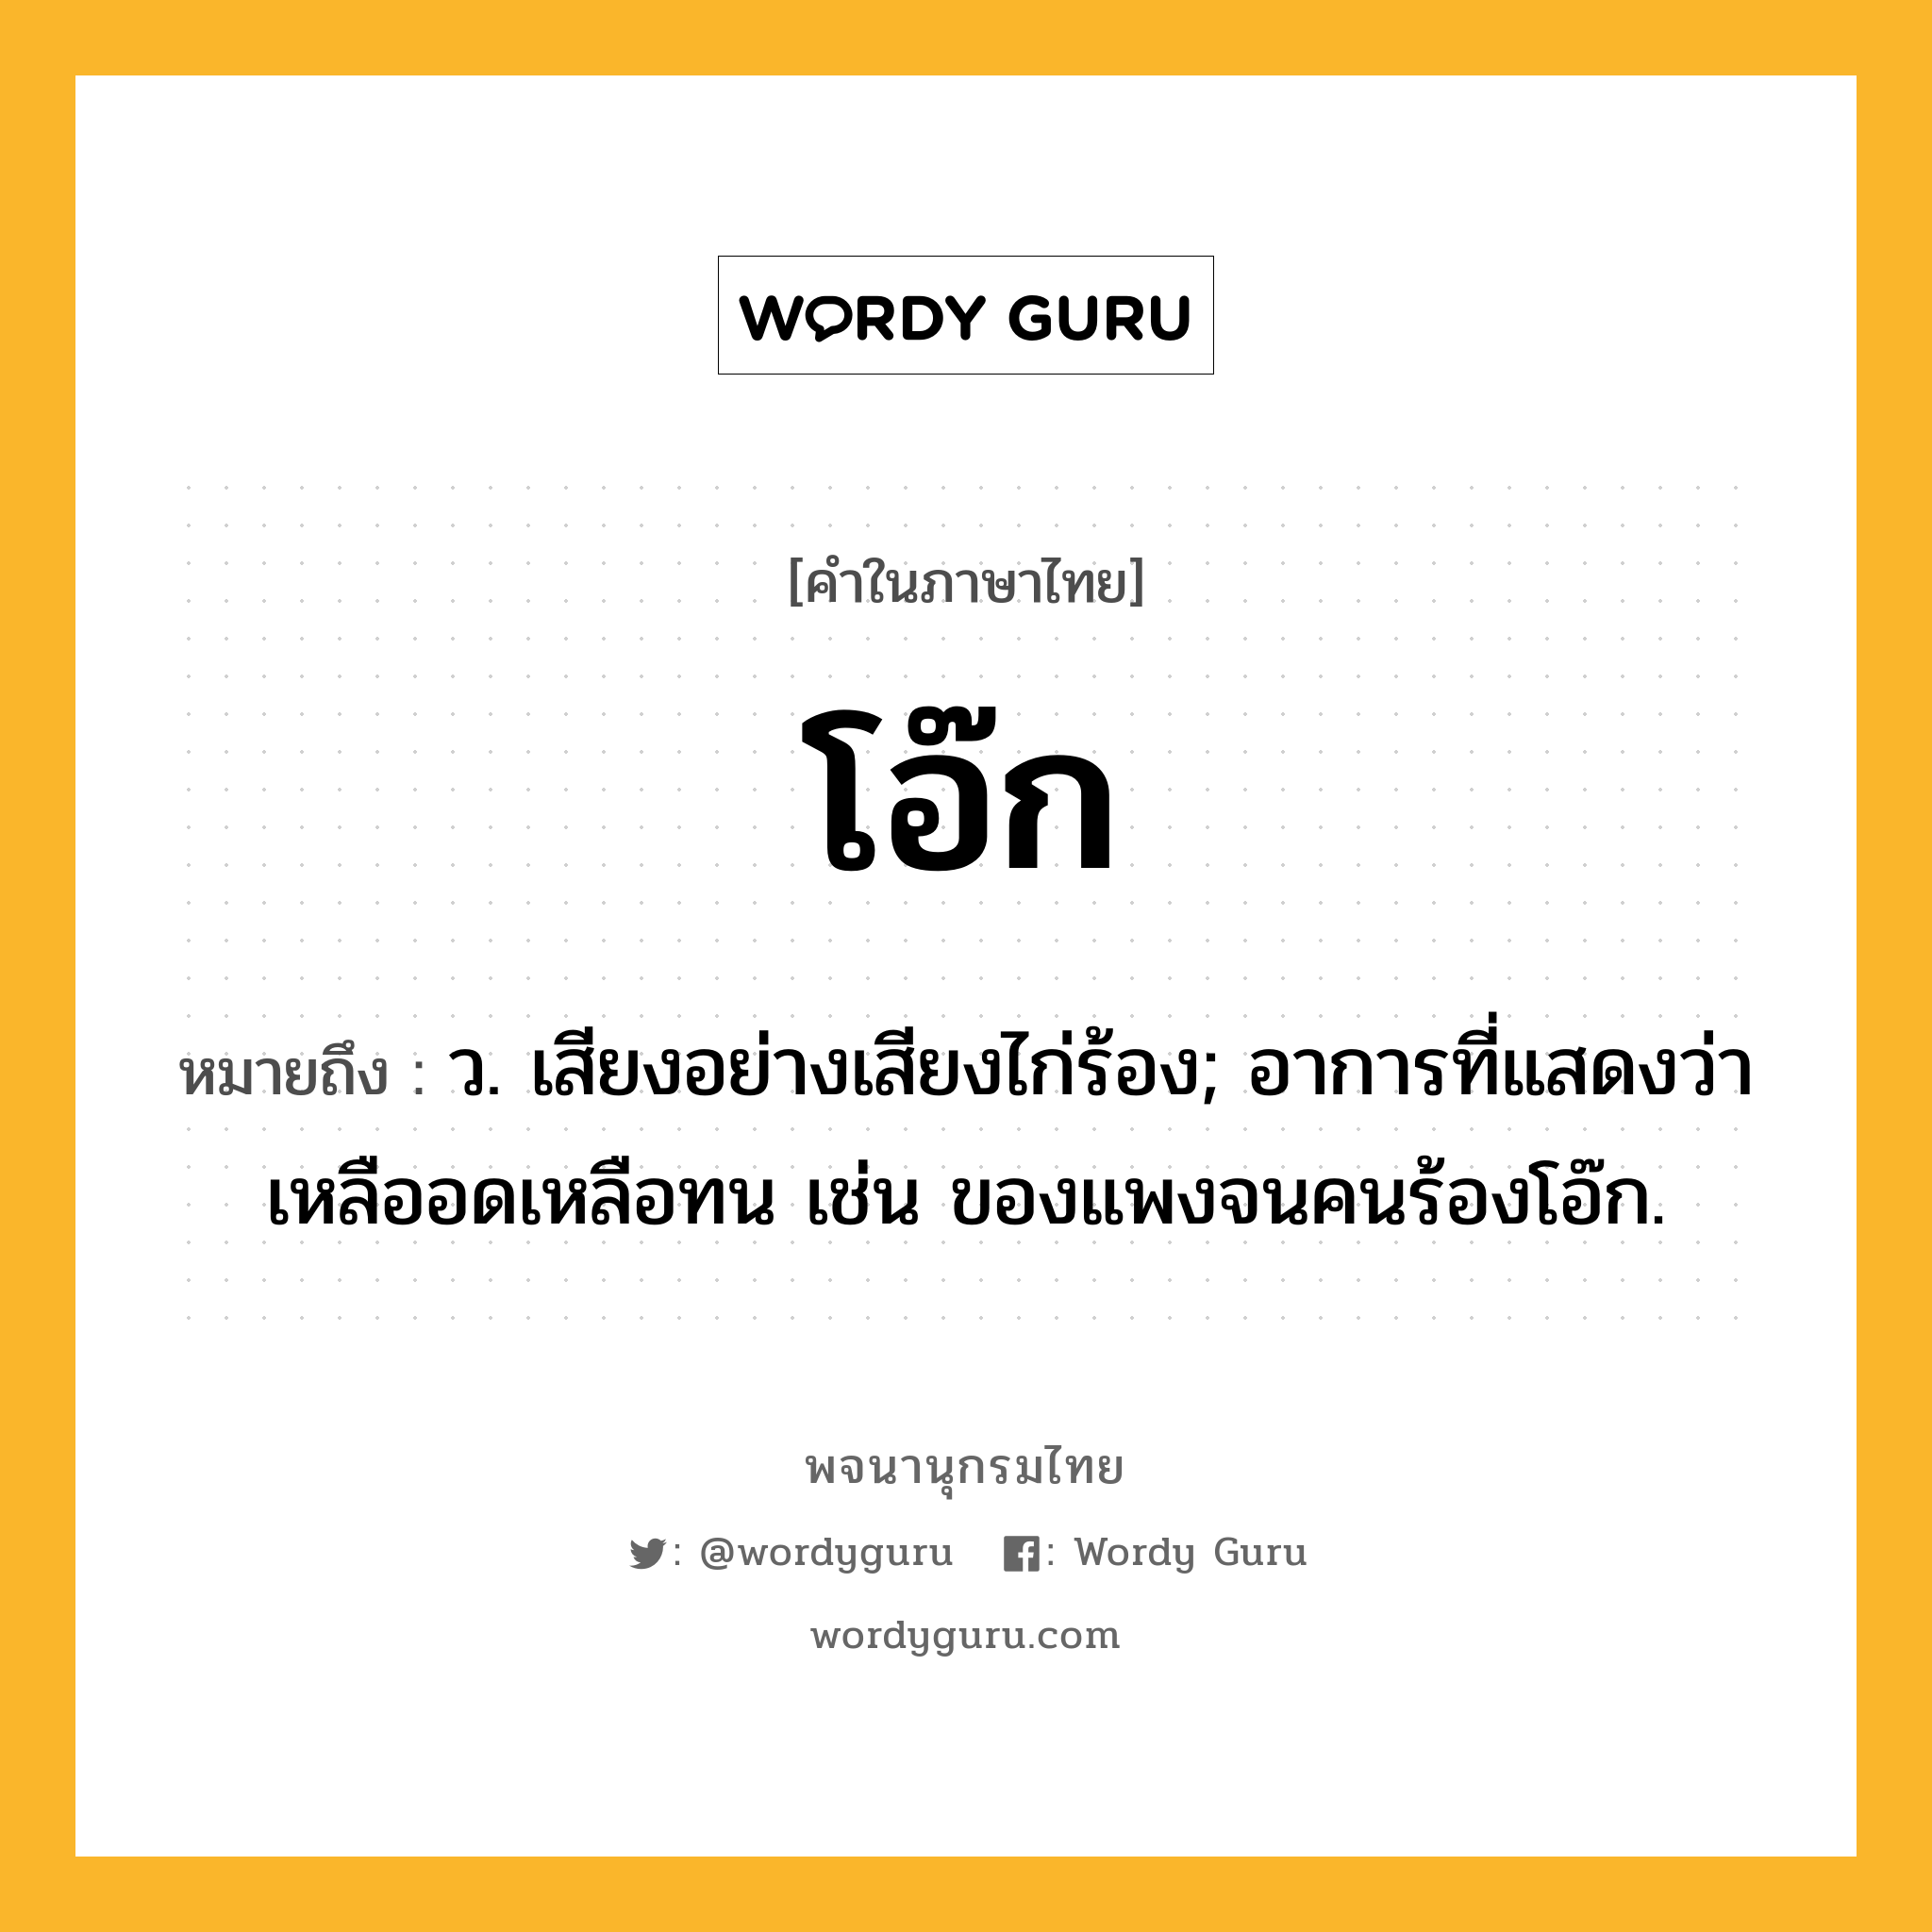 โอ๊ก ความหมาย หมายถึงอะไร?, คำในภาษาไทย โอ๊ก หมายถึง ว. เสียงอย่างเสียงไก่ร้อง; อาการที่แสดงว่าเหลืออดเหลือทน เช่น ของแพงจนคนร้องโอ๊ก.